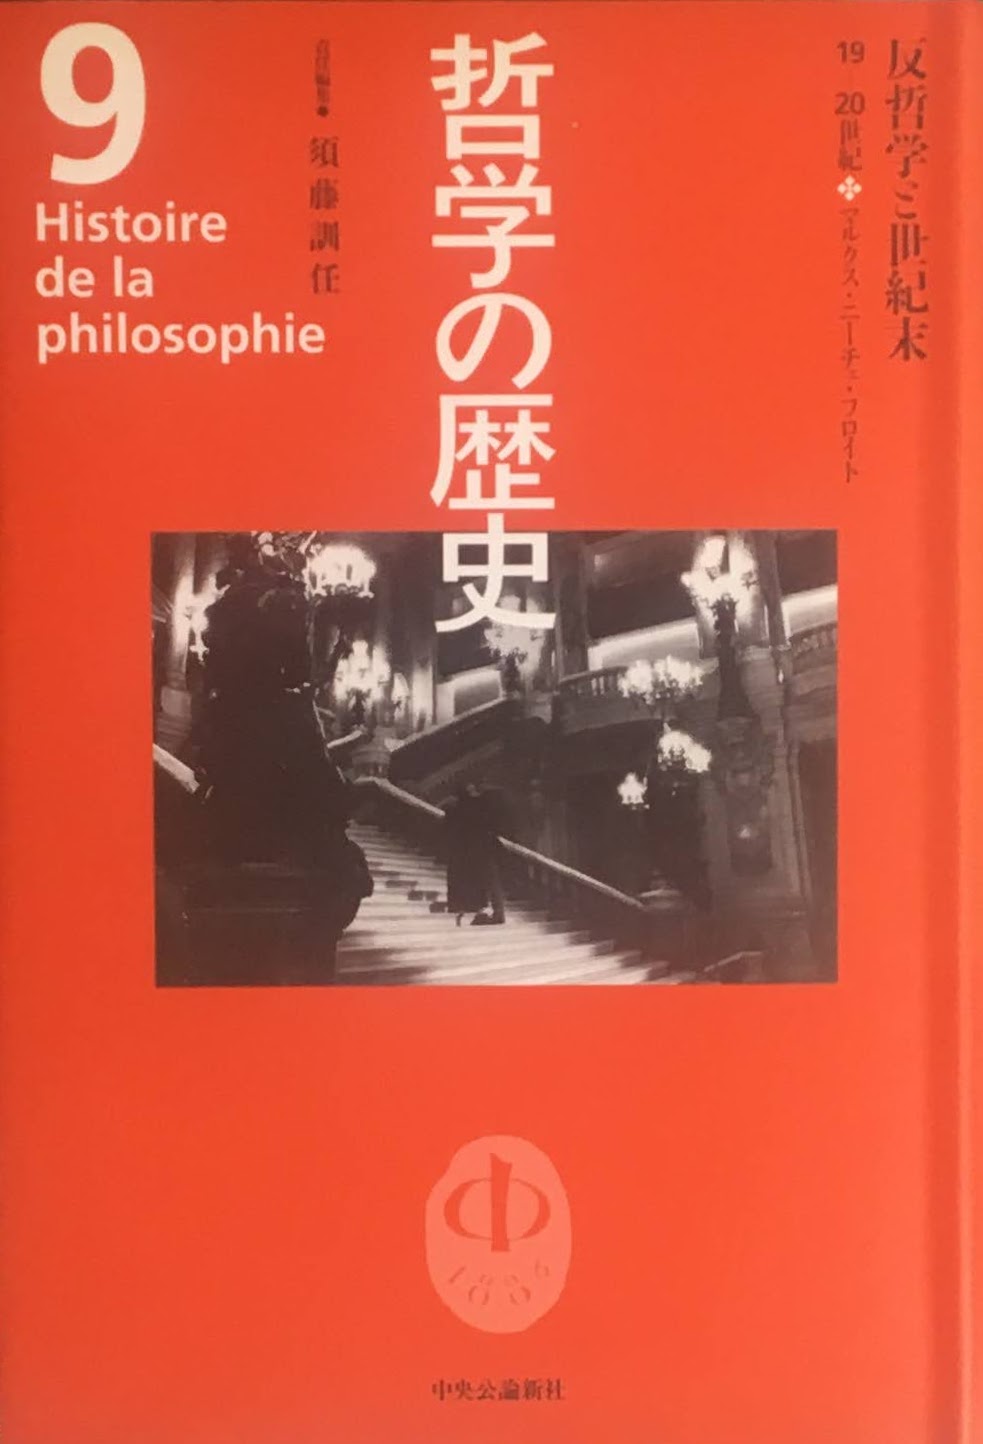 哲学の歴史 別巻 (哲学と哲学史)と哲学の歴史1〜12巻、全13巻 - www 